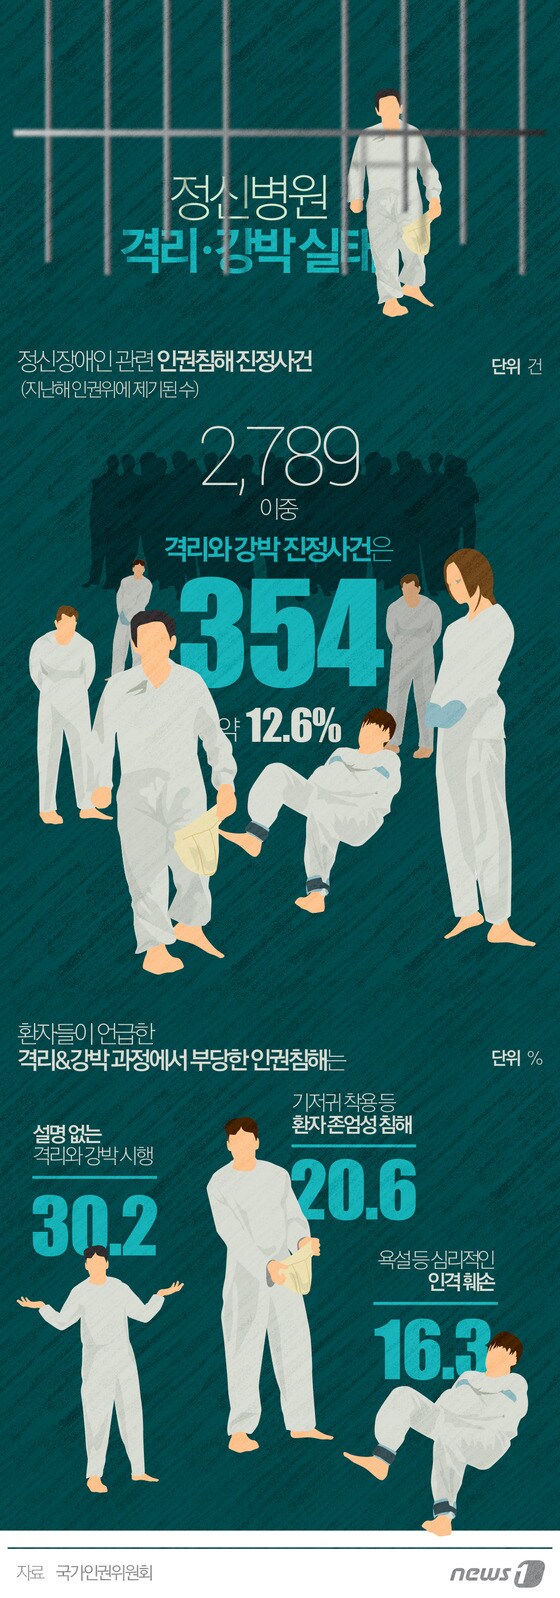 [그래픽뉴스] 정신병원 격리·강박 실태